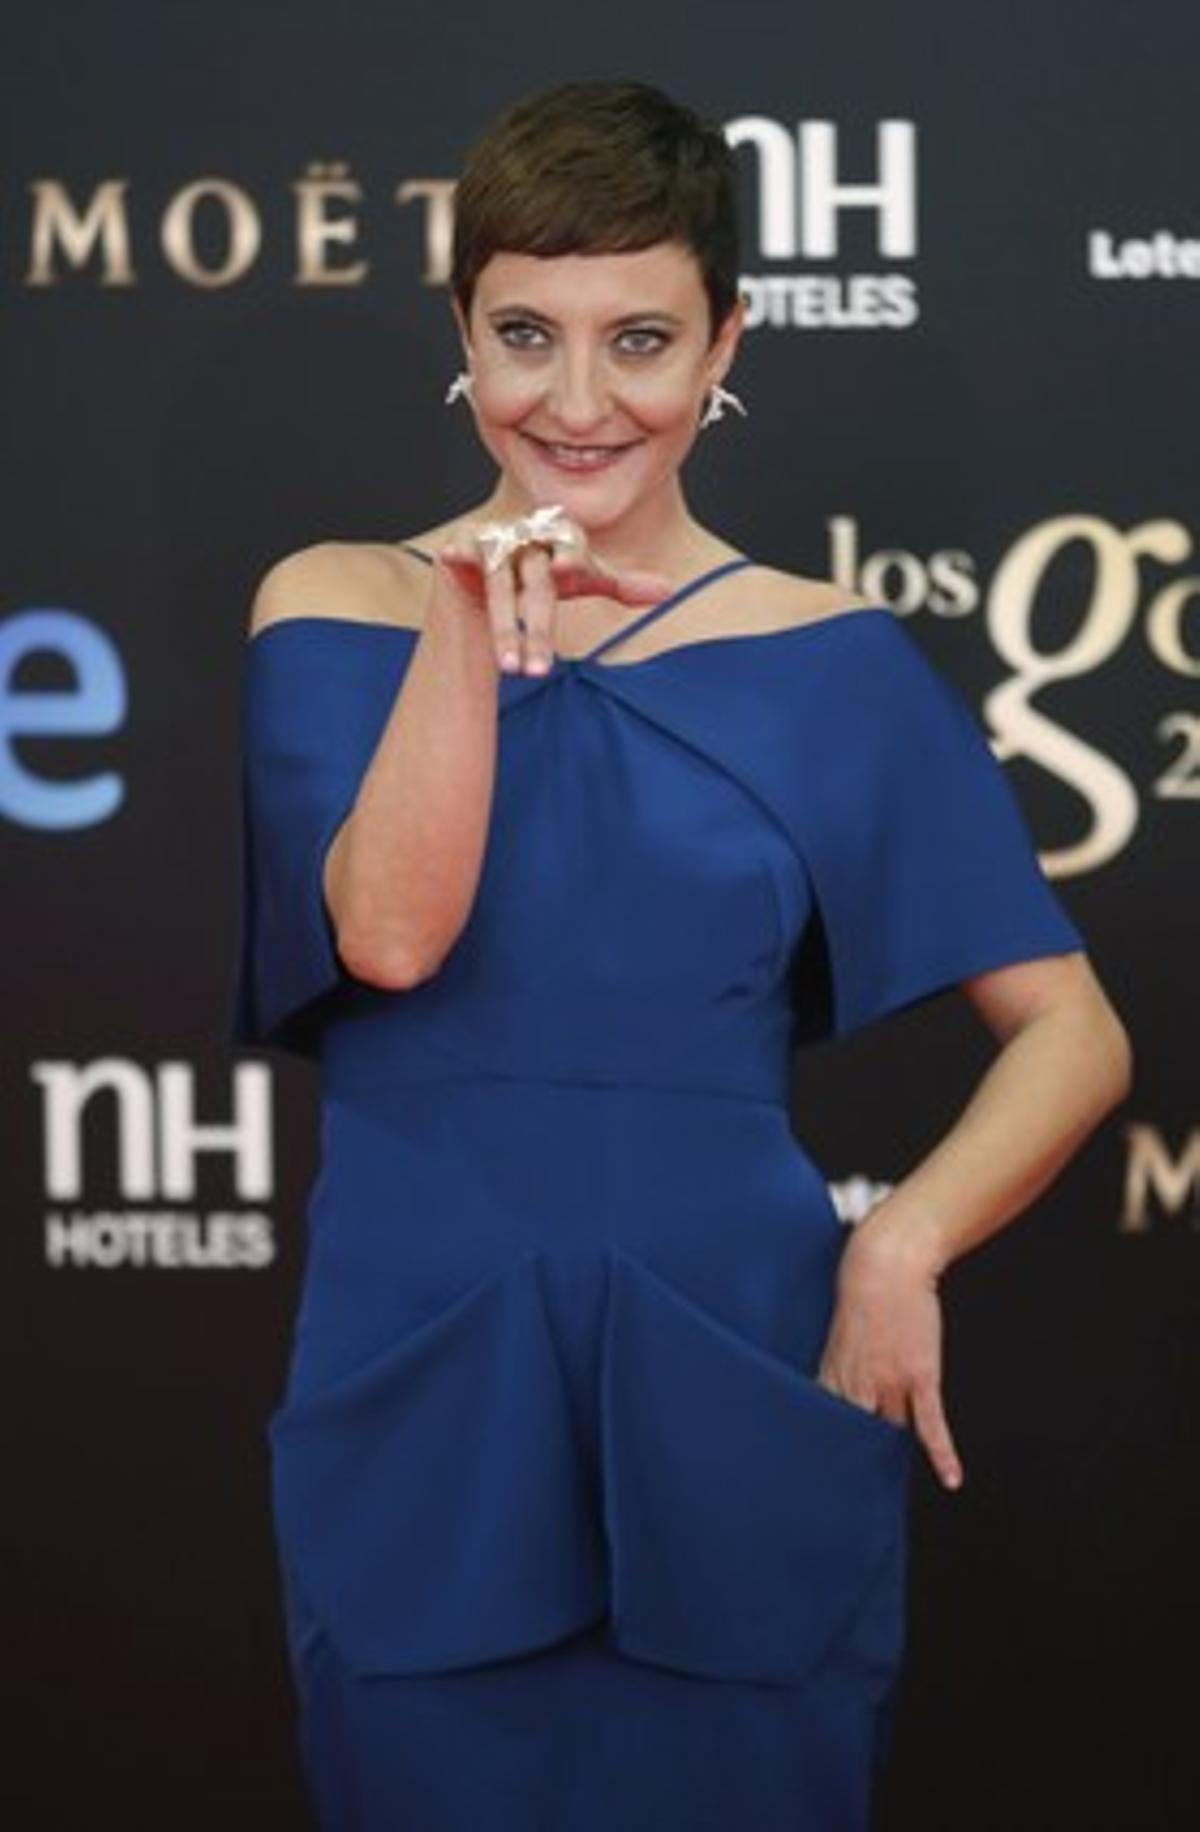 La cómica Eva Hache, presentadora por segundo año consecutivo de la gala.